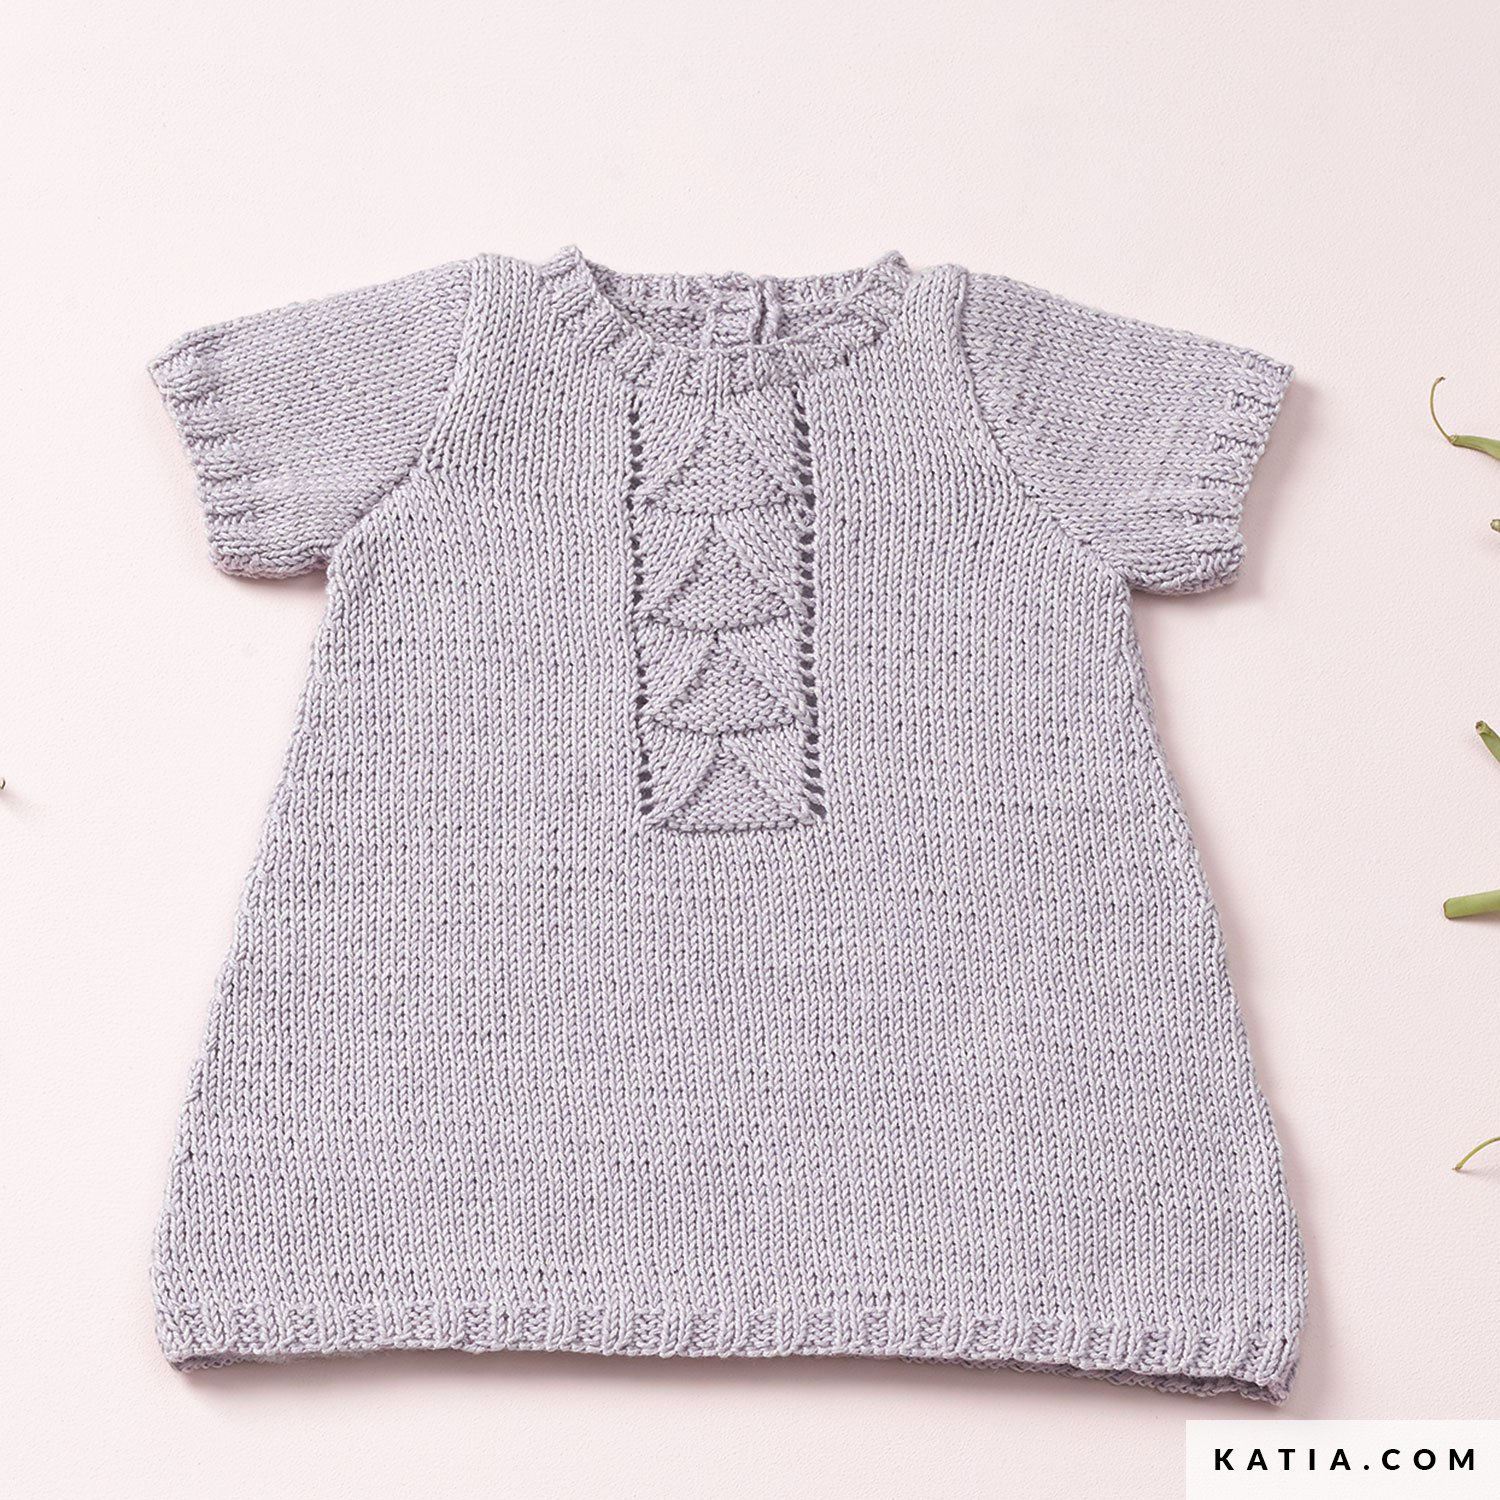 Crochet Baby Pinafore Dress Pattern Dress Ba Spring Summer Models Patterns Katia